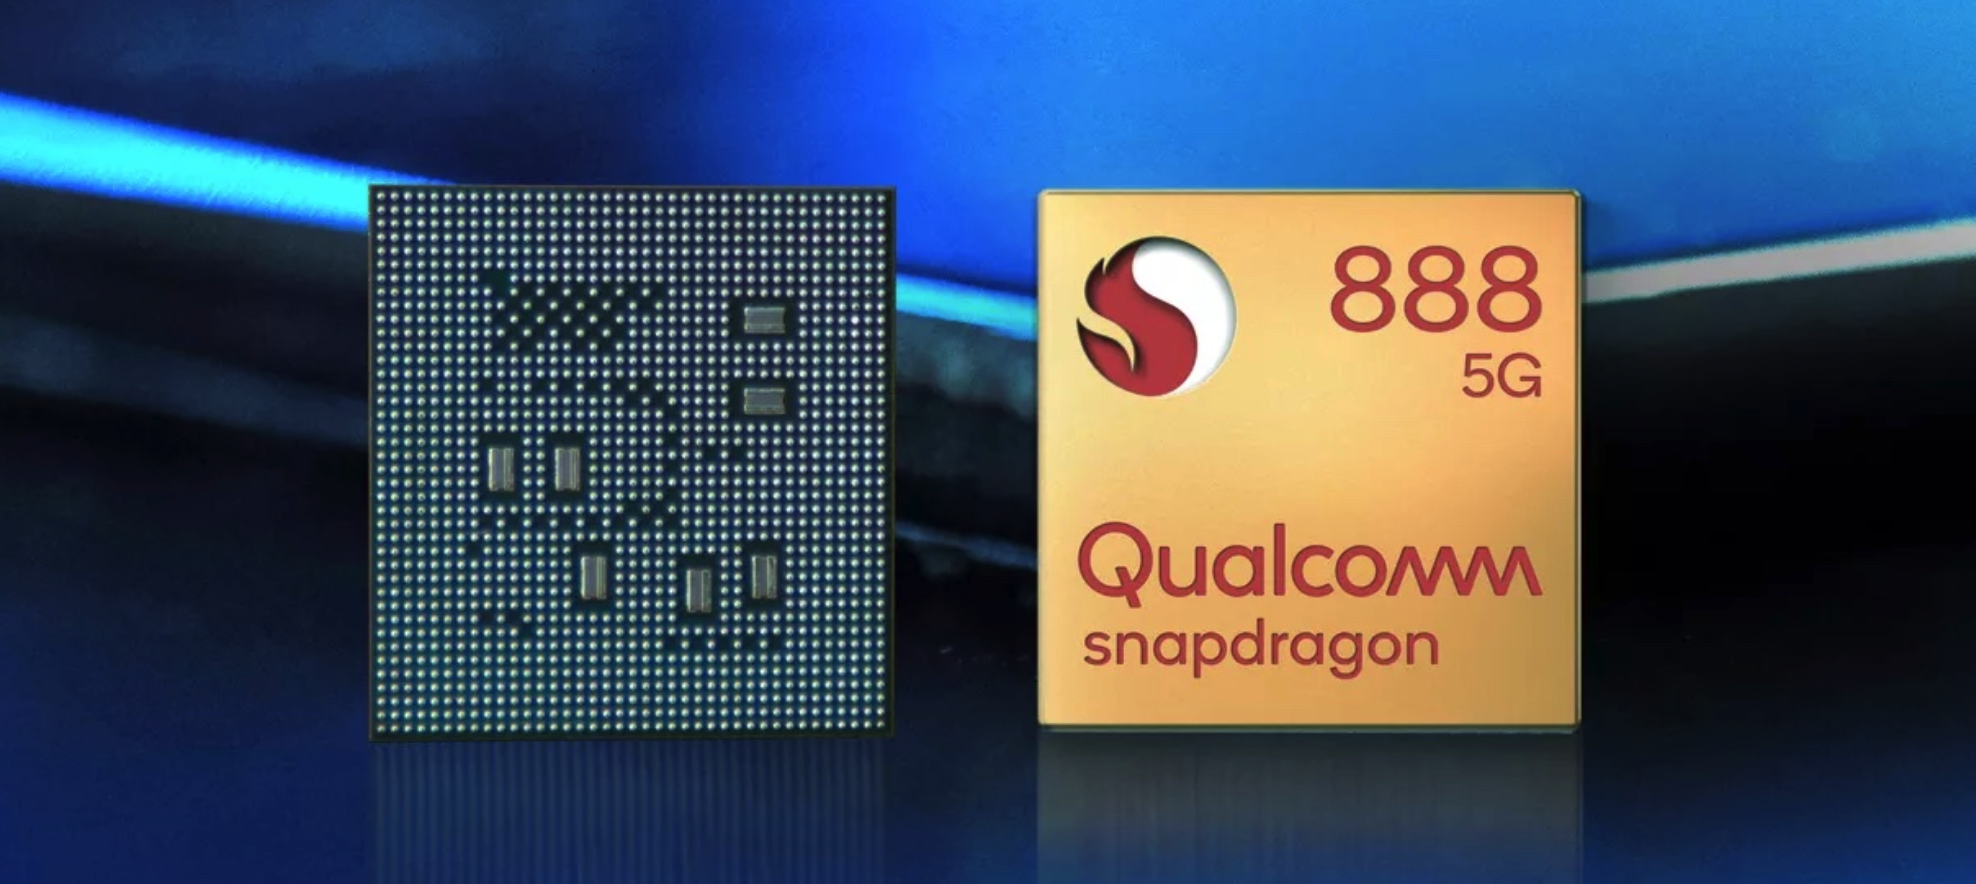 O Snapdragon 888 traz ganhos de desempenho: processo 5nm, modelo 5G integrado, melhor IA e processamento de imagem